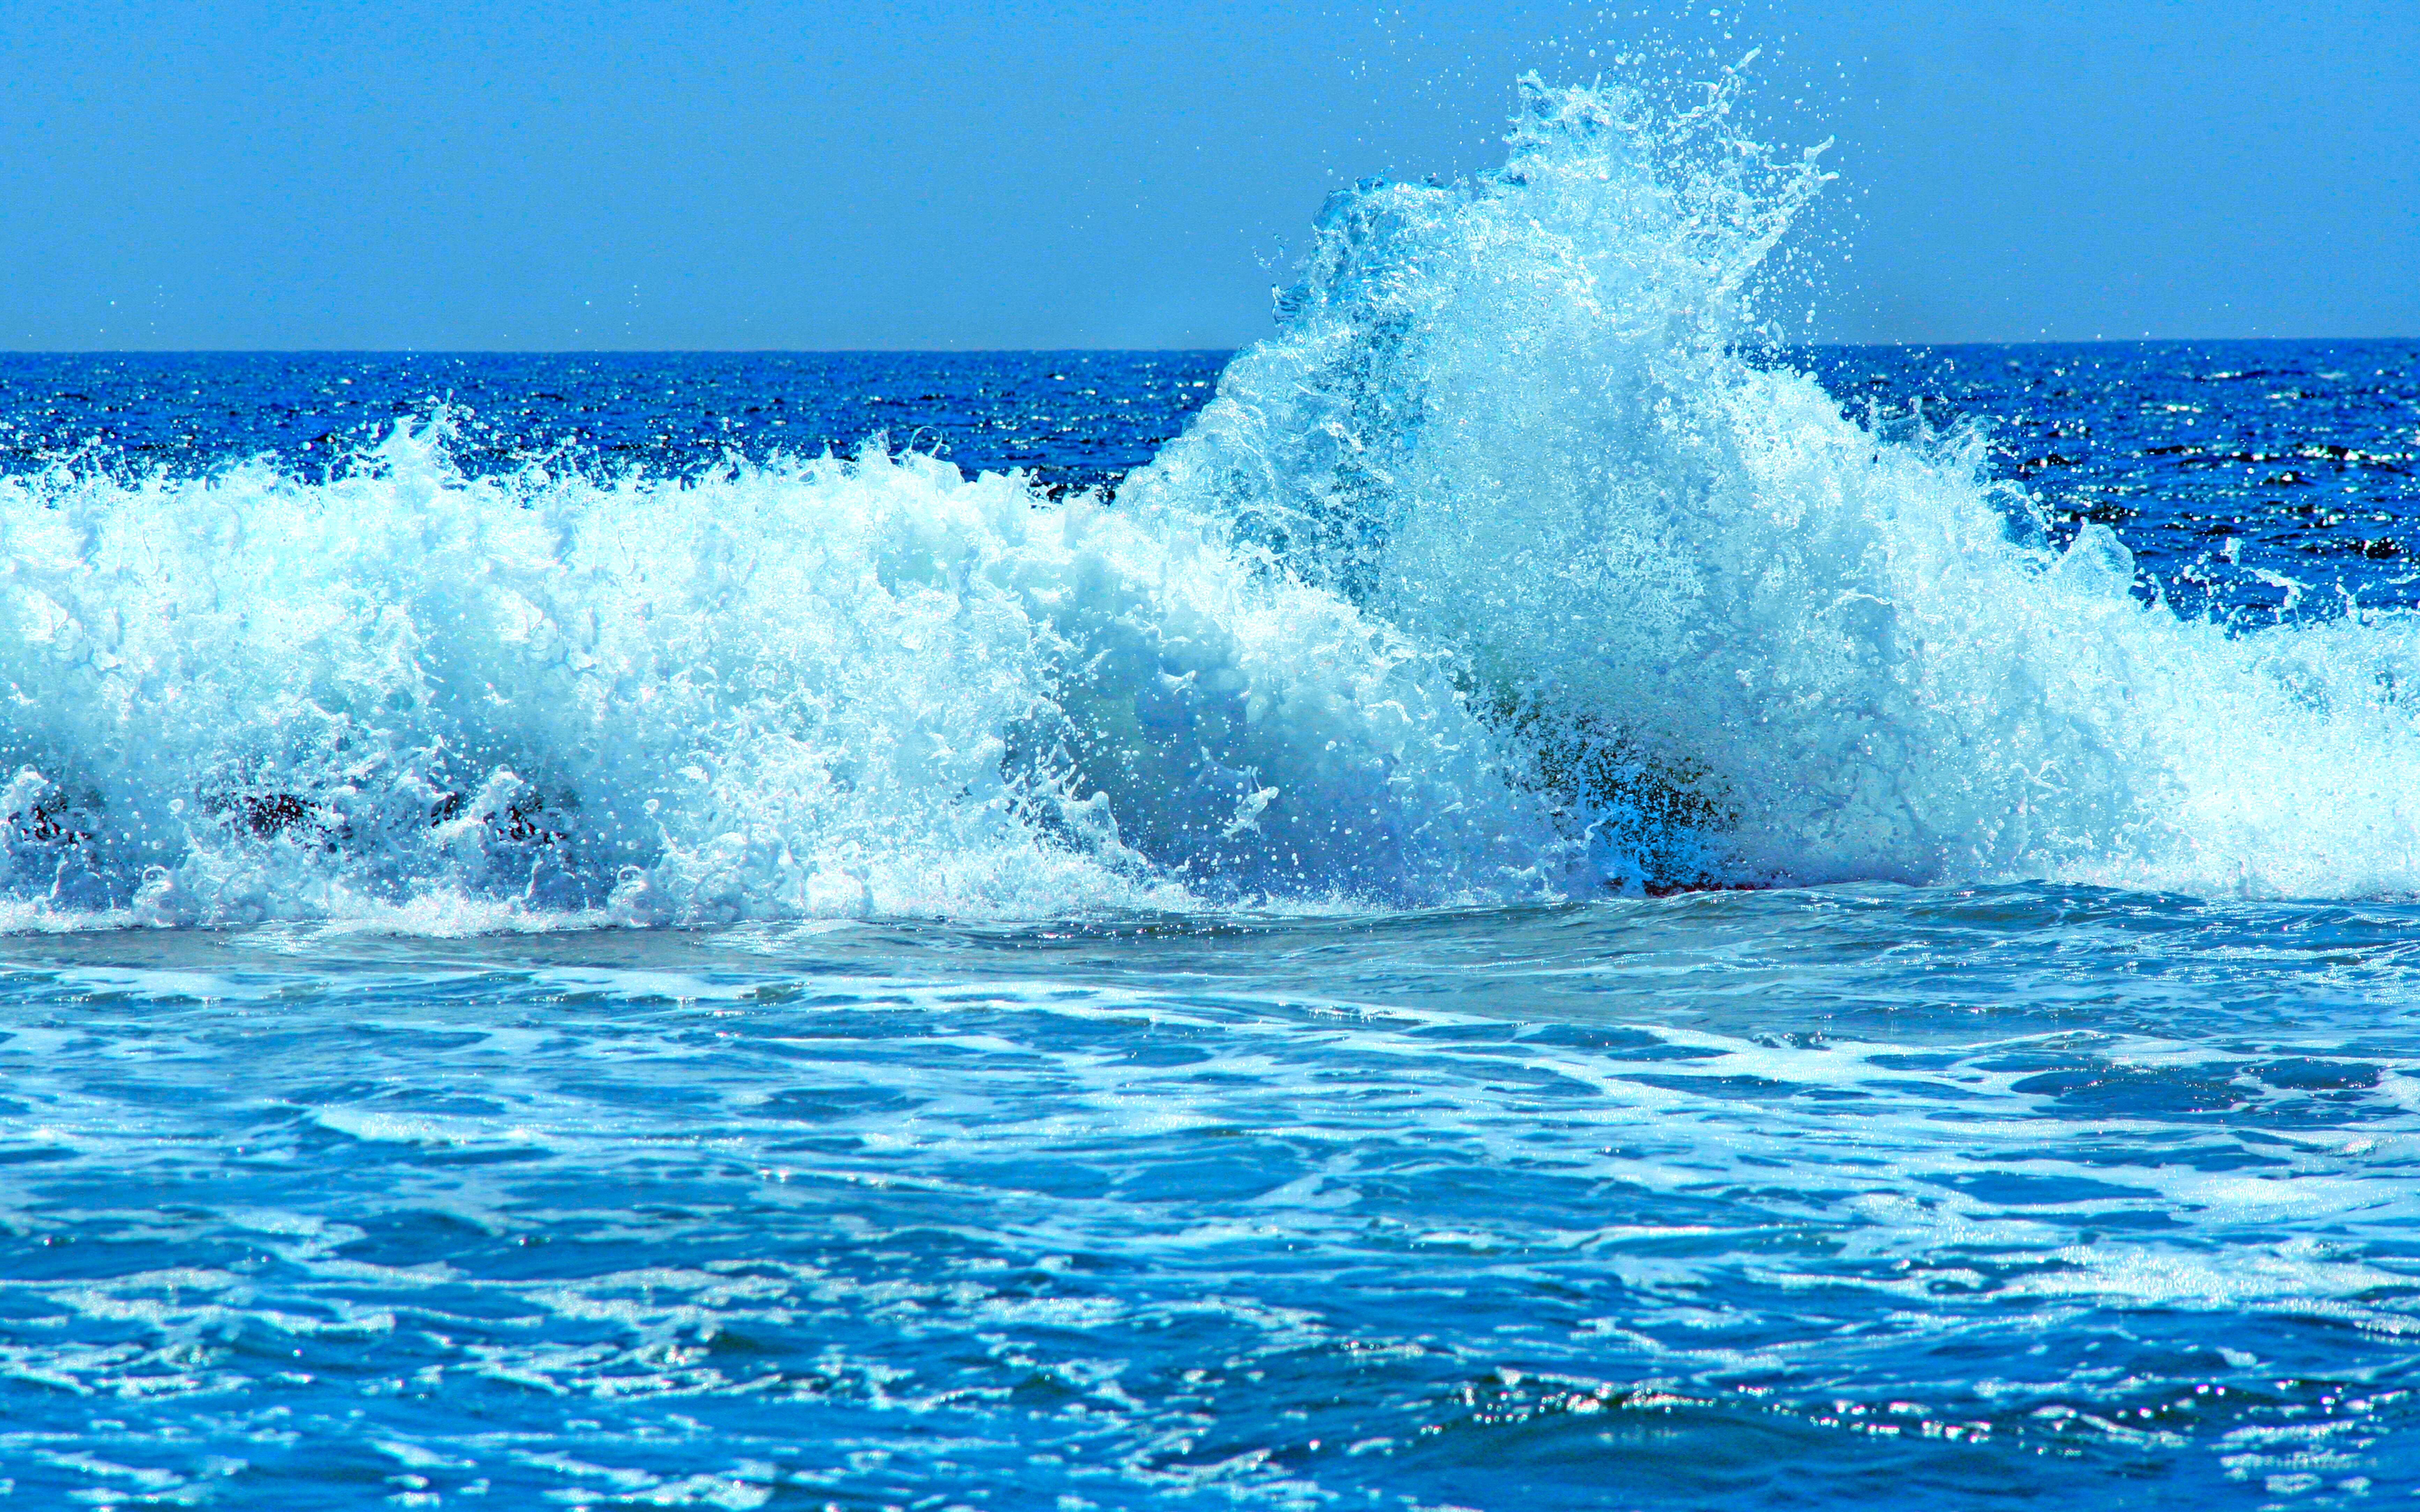 Fondos de Ocean Waves - Los mejores fondos de Ocean Waves